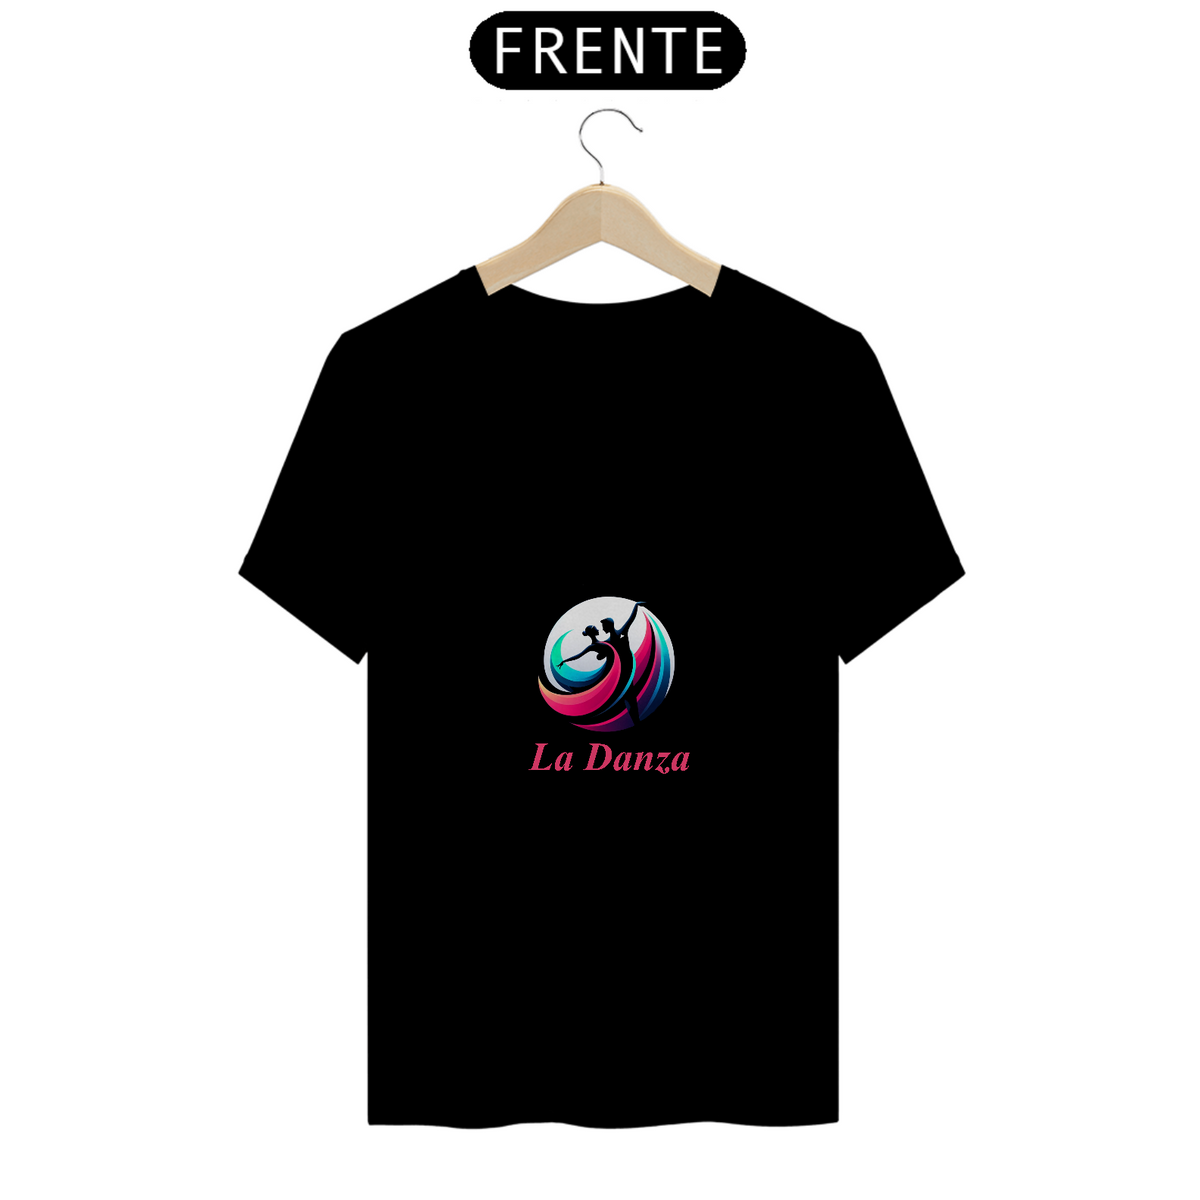 Nome do produto: Camiseta La Danza